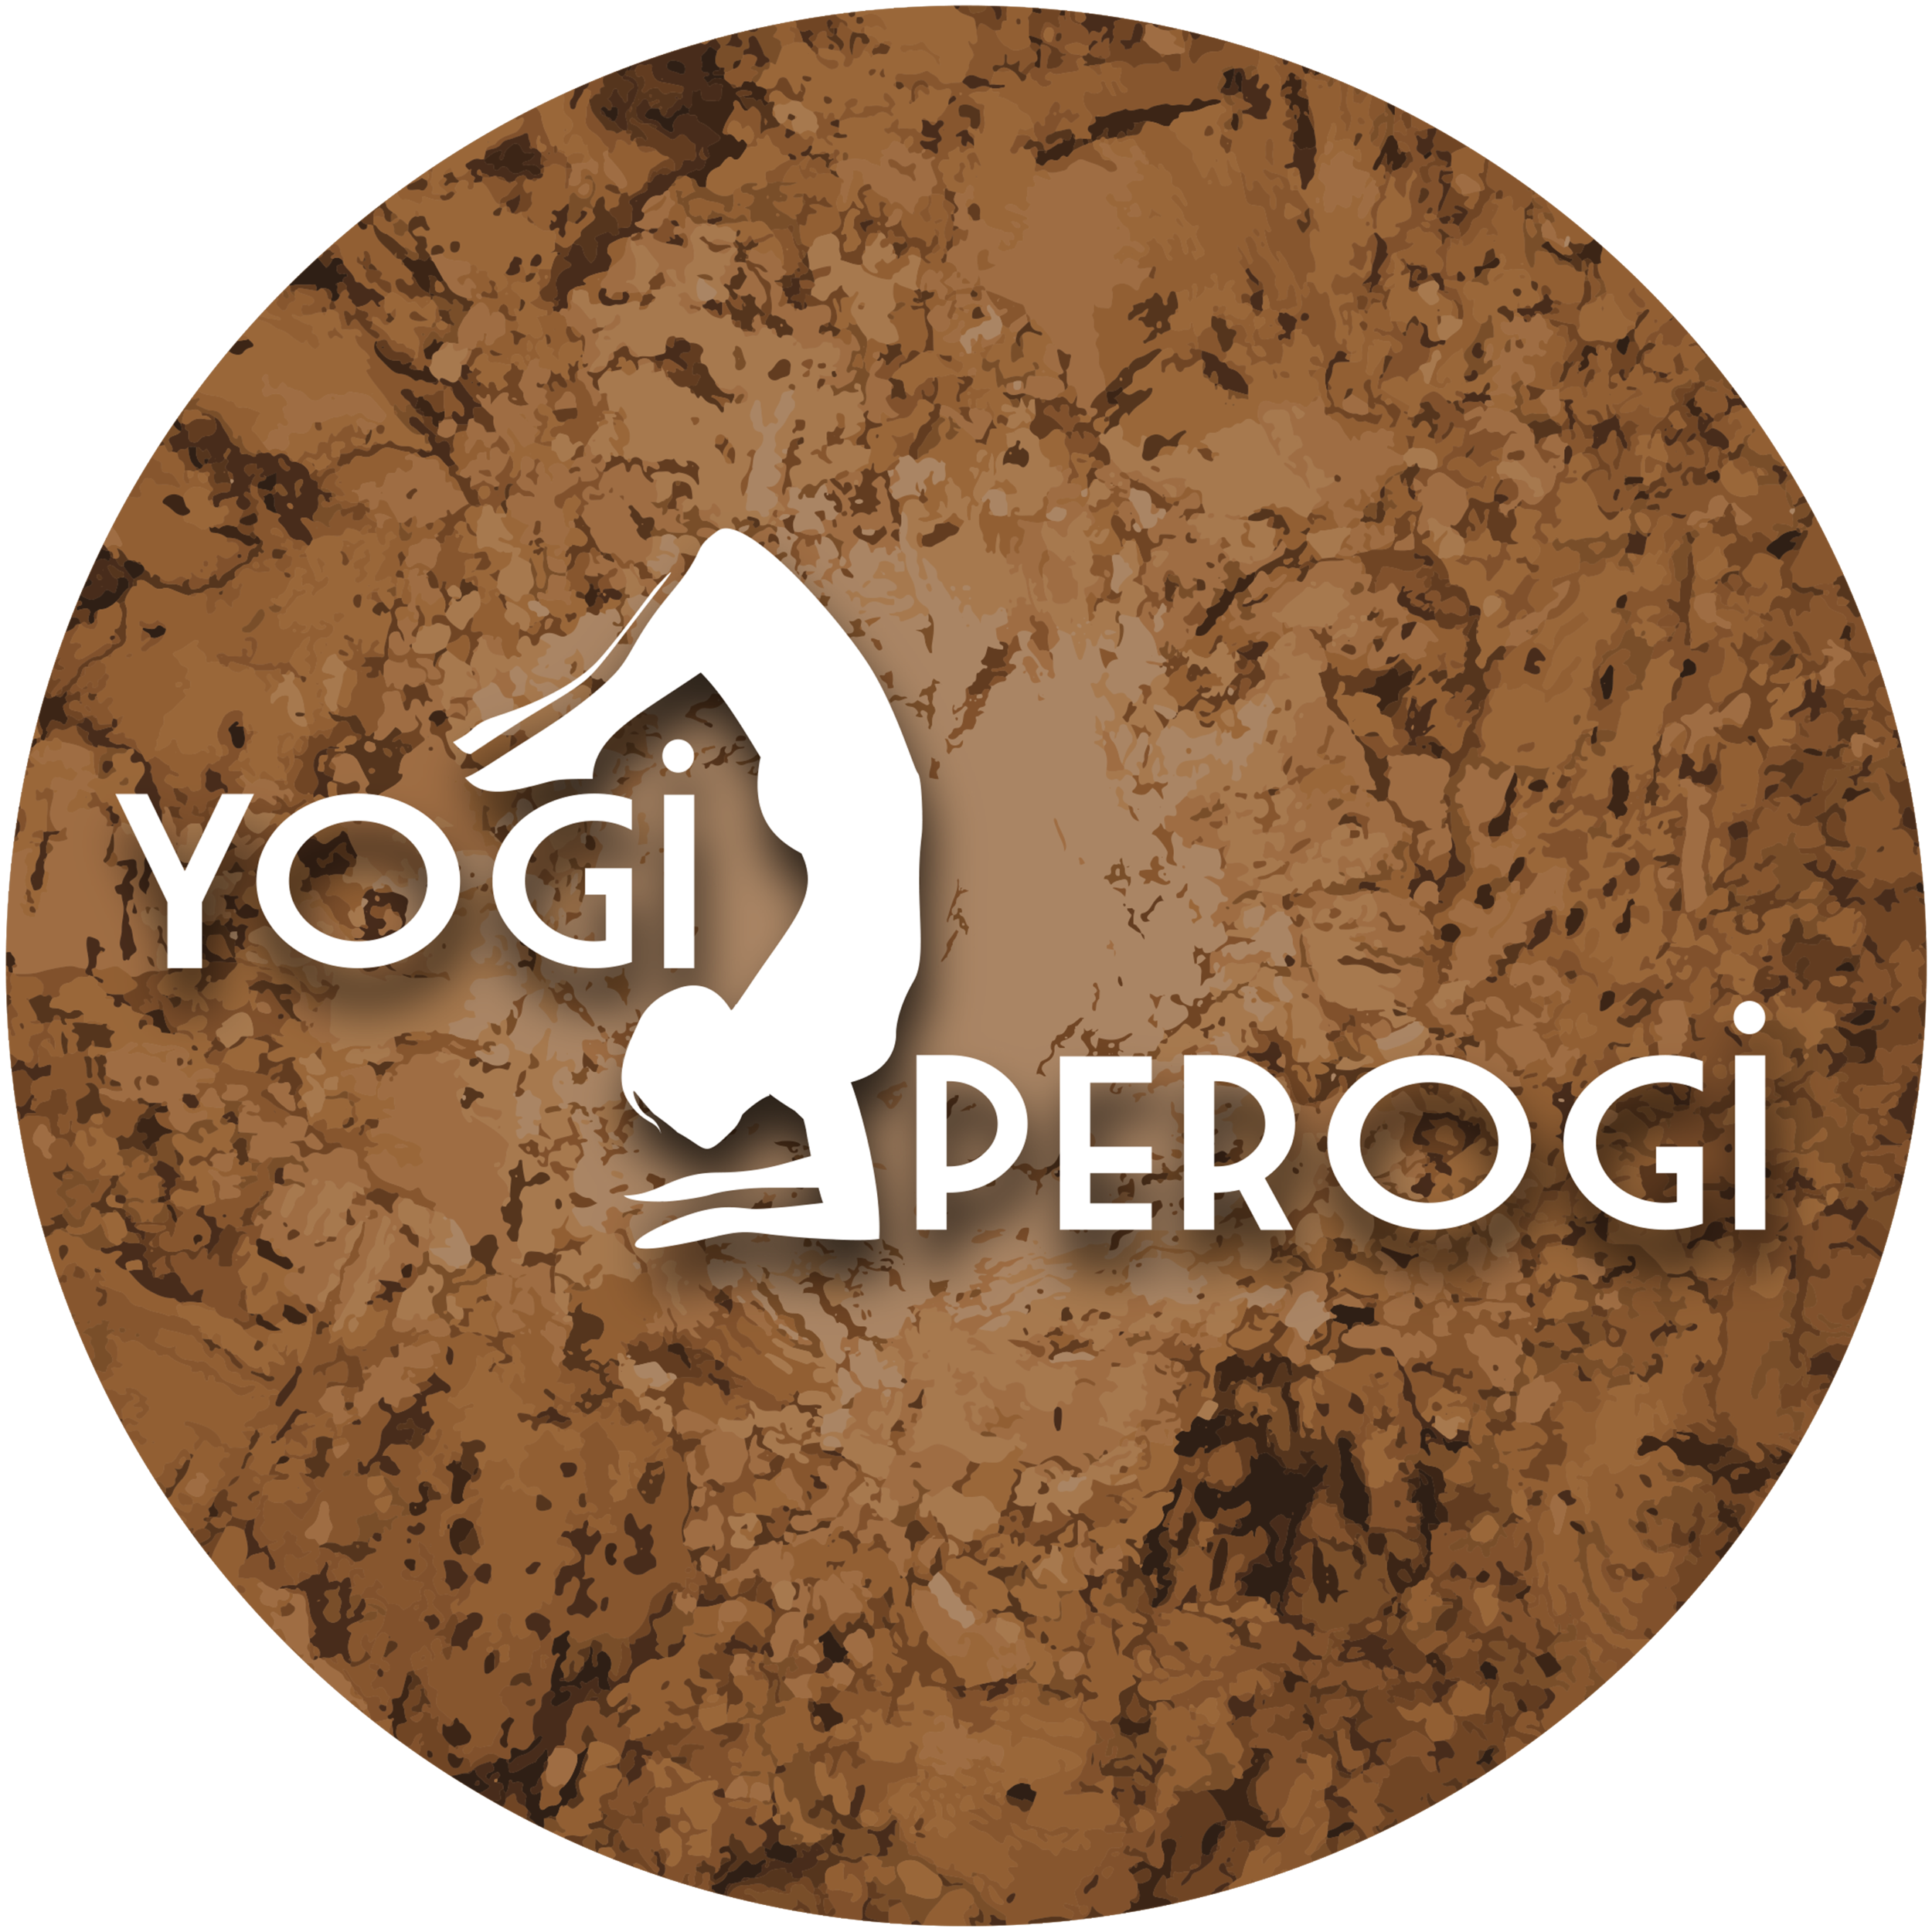 The Yogi Perogi- Yoga Studio